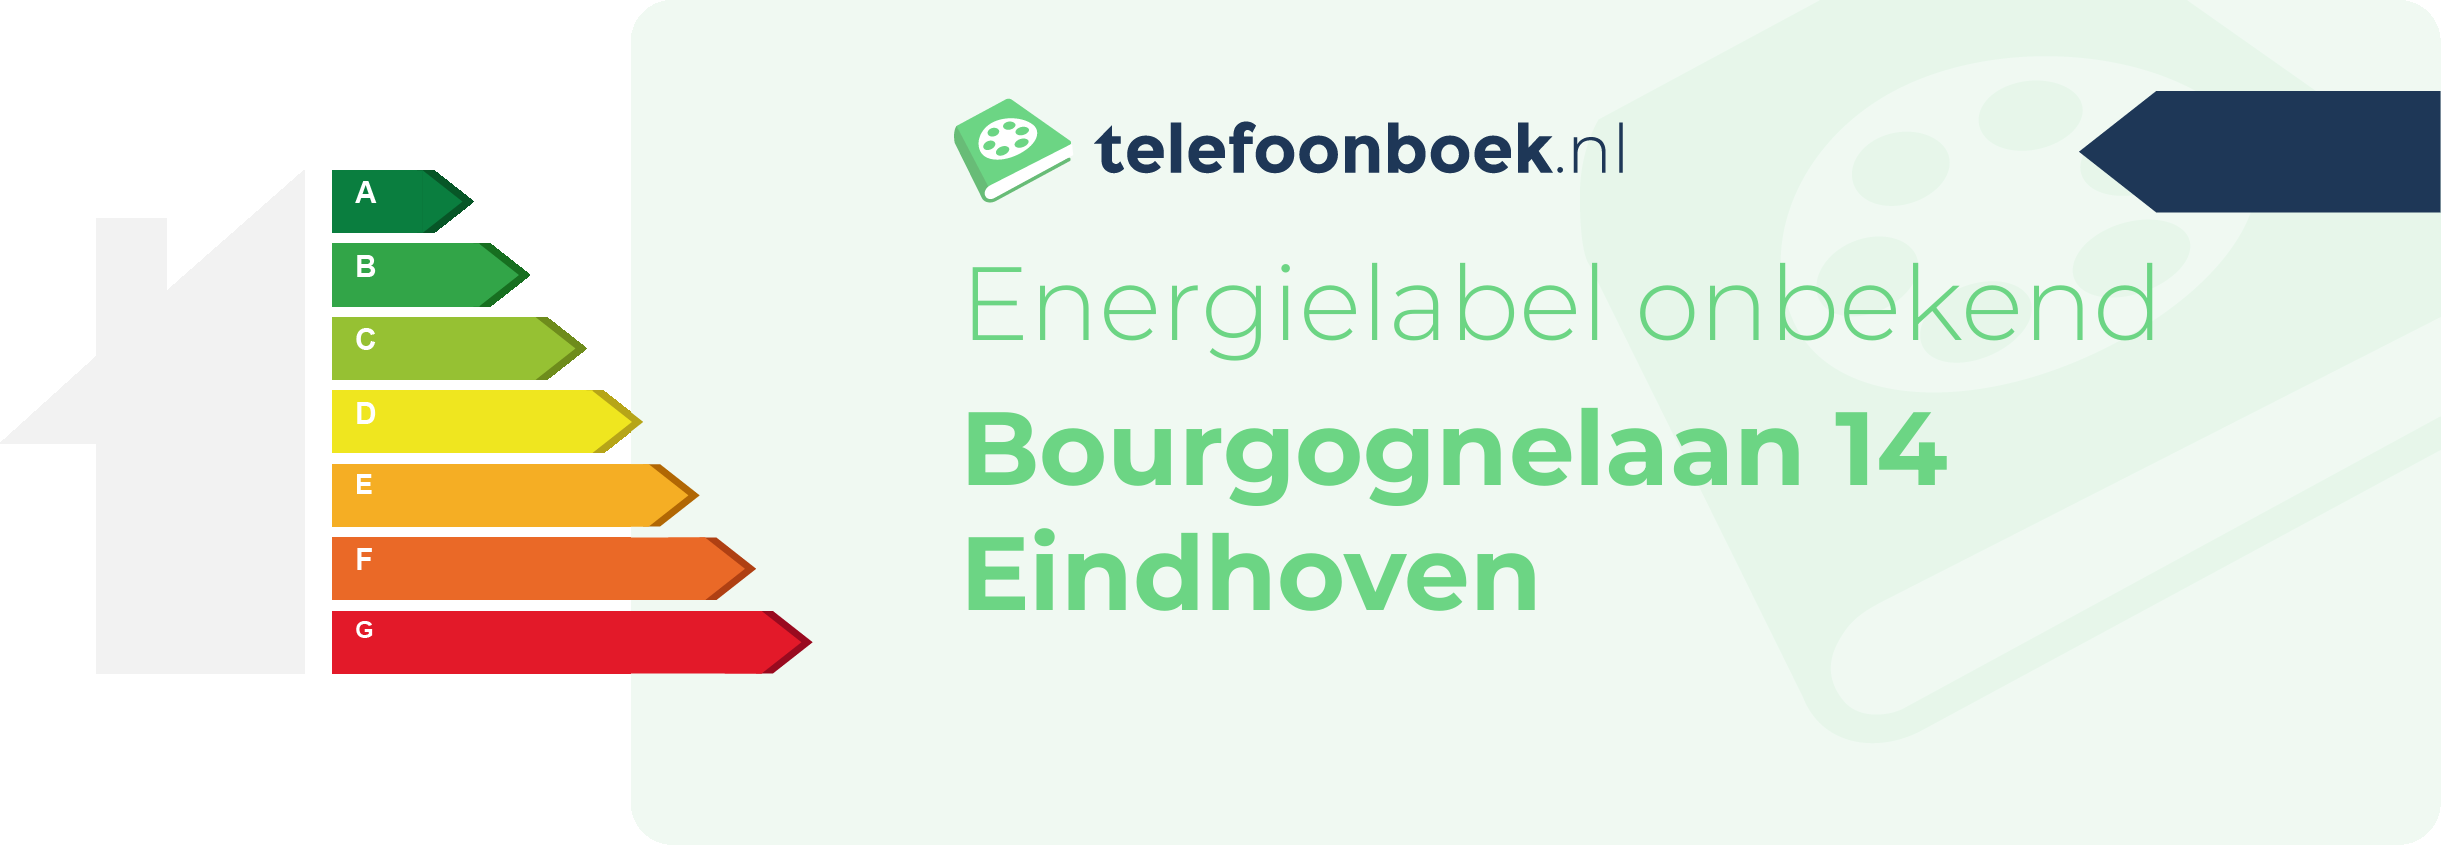 Energielabel Bourgognelaan 14 Eindhoven